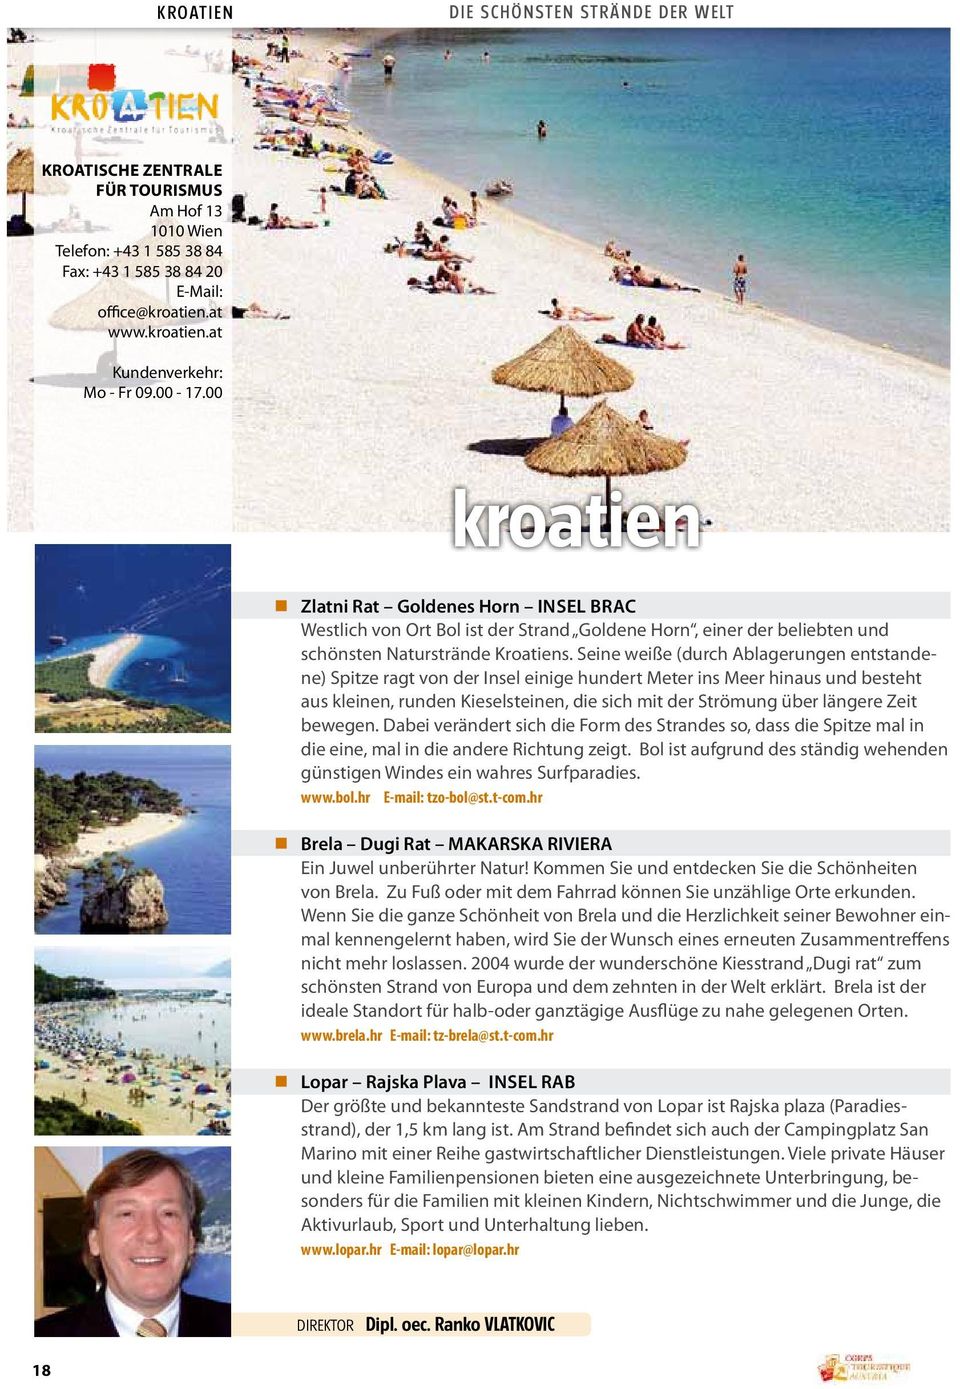 2000 x 1600 px bild 2-4 beschriebenen Strands kroatien Zlatni Rat Goldenes Horn Insel Brac Westlich von Ort Bol ist der Strand Goldene Horn, einer der beliebten und schönsten Naturstrände Kroatiens.